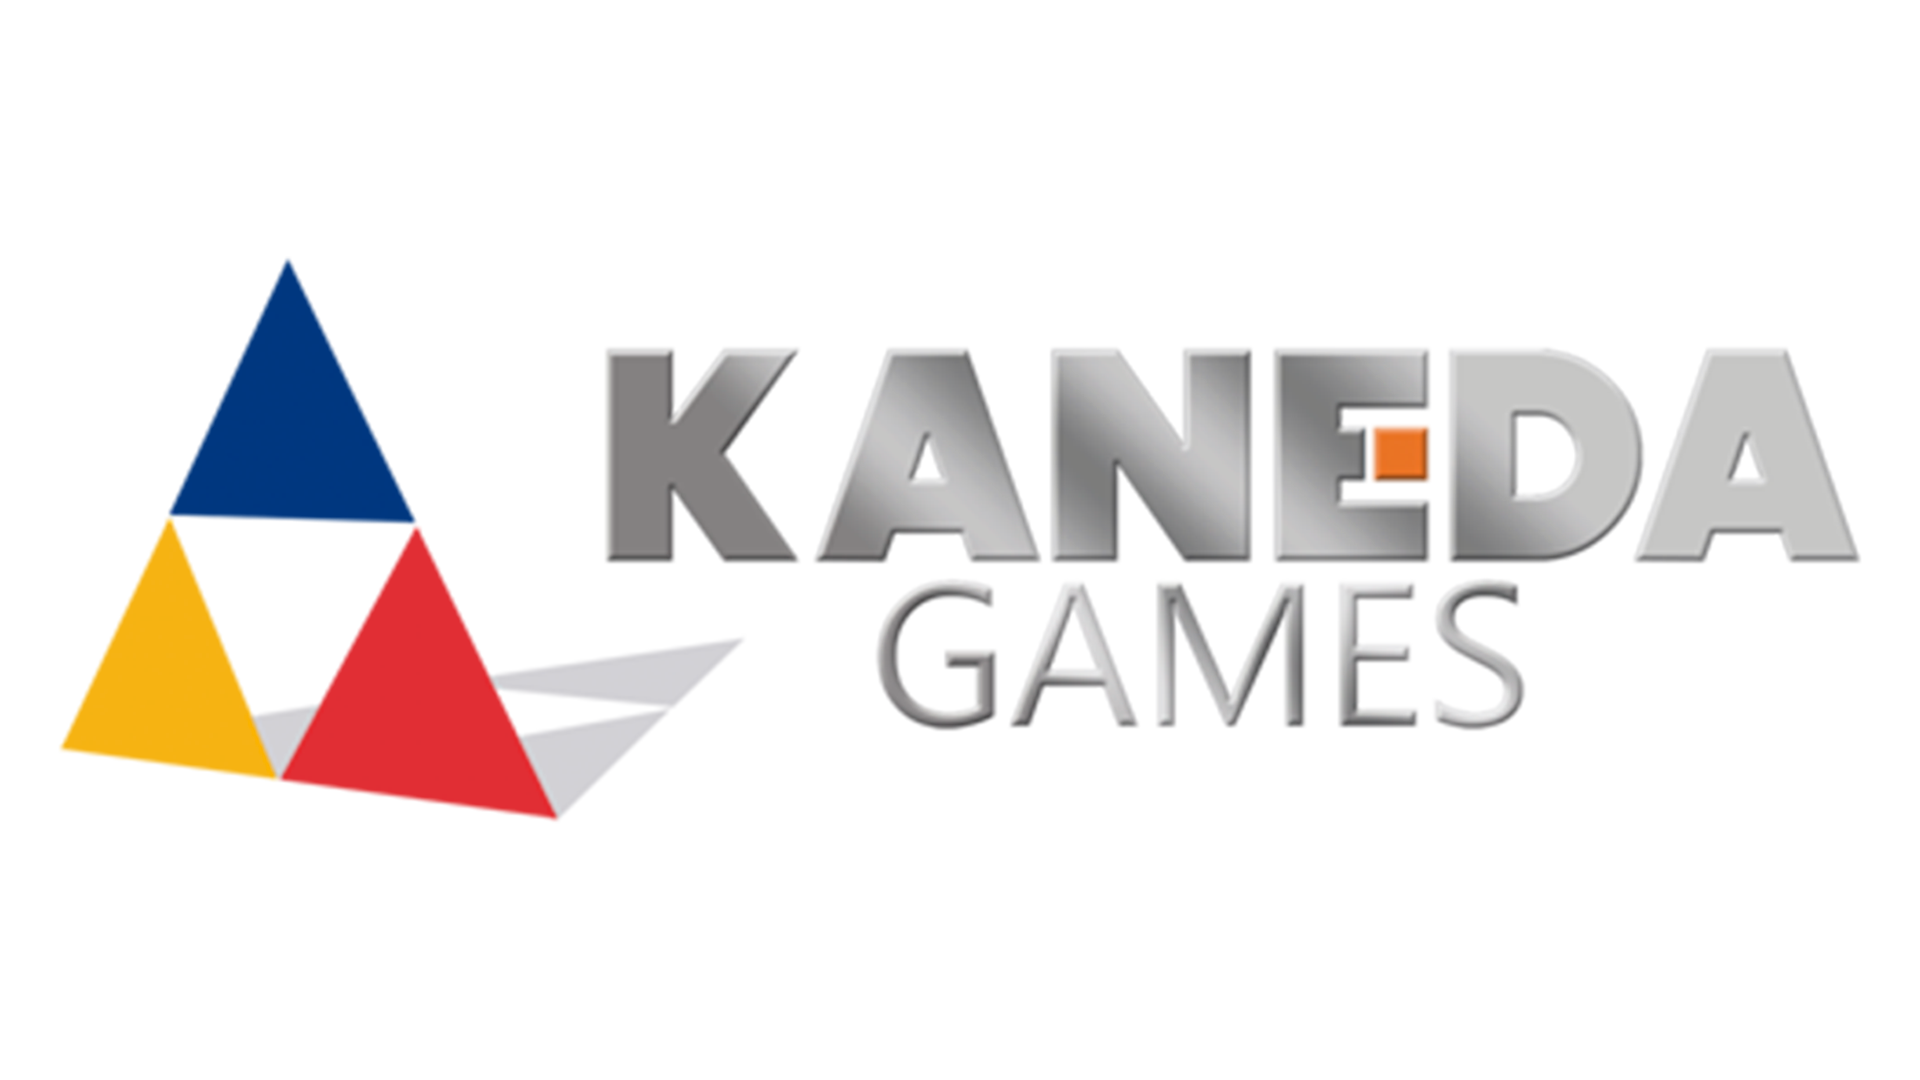 Kaneda Games